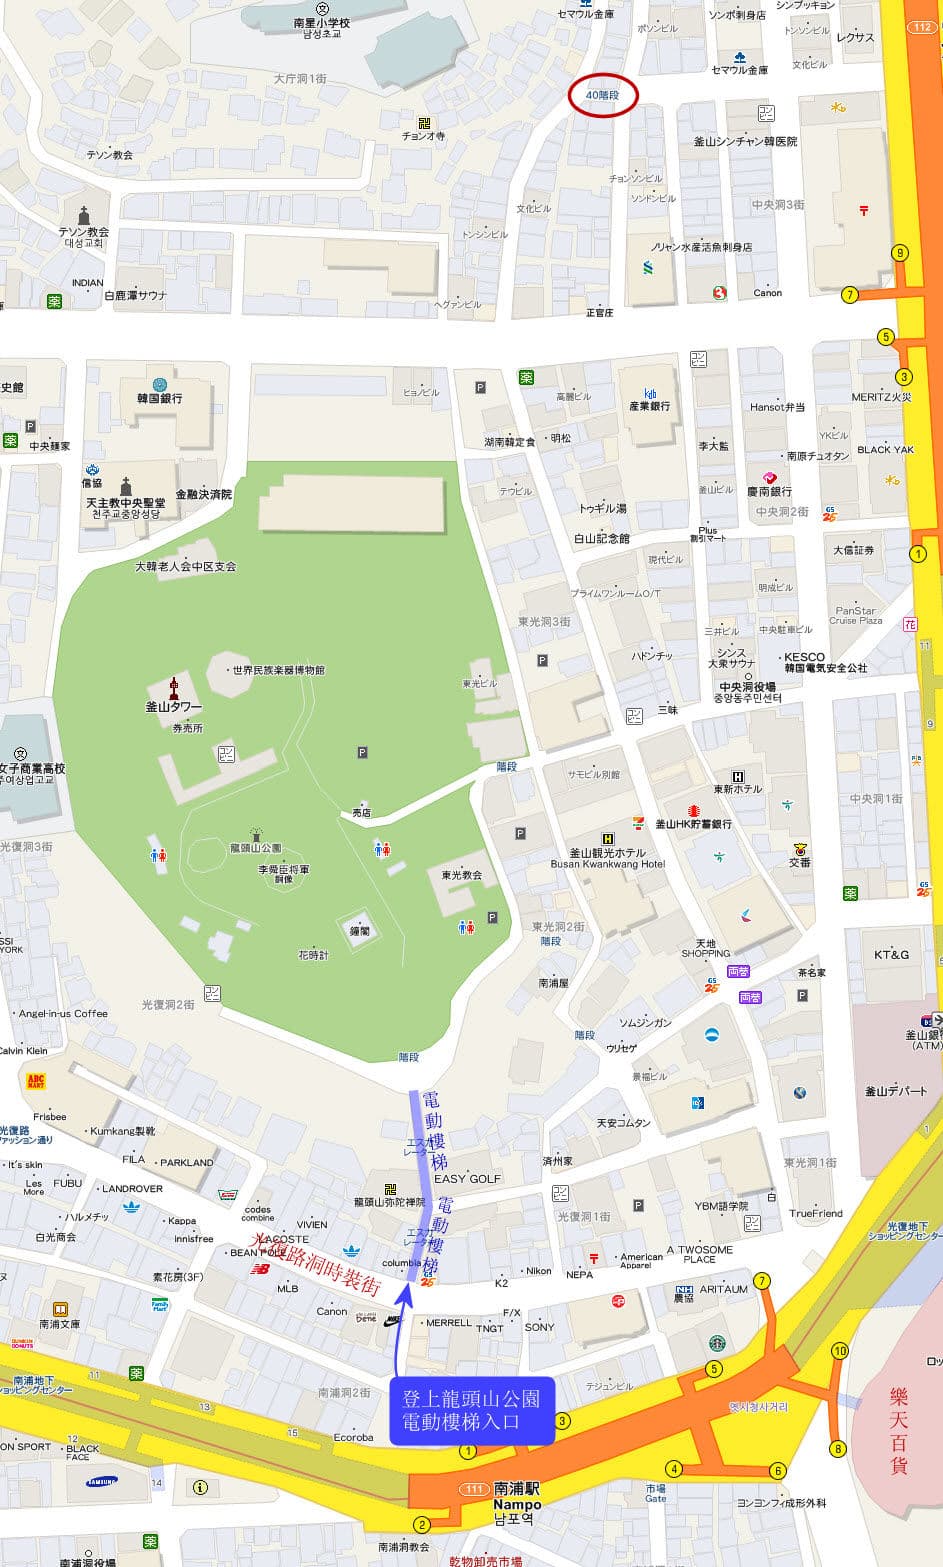 釜山龍頭山公園電動樓梯入口地圖